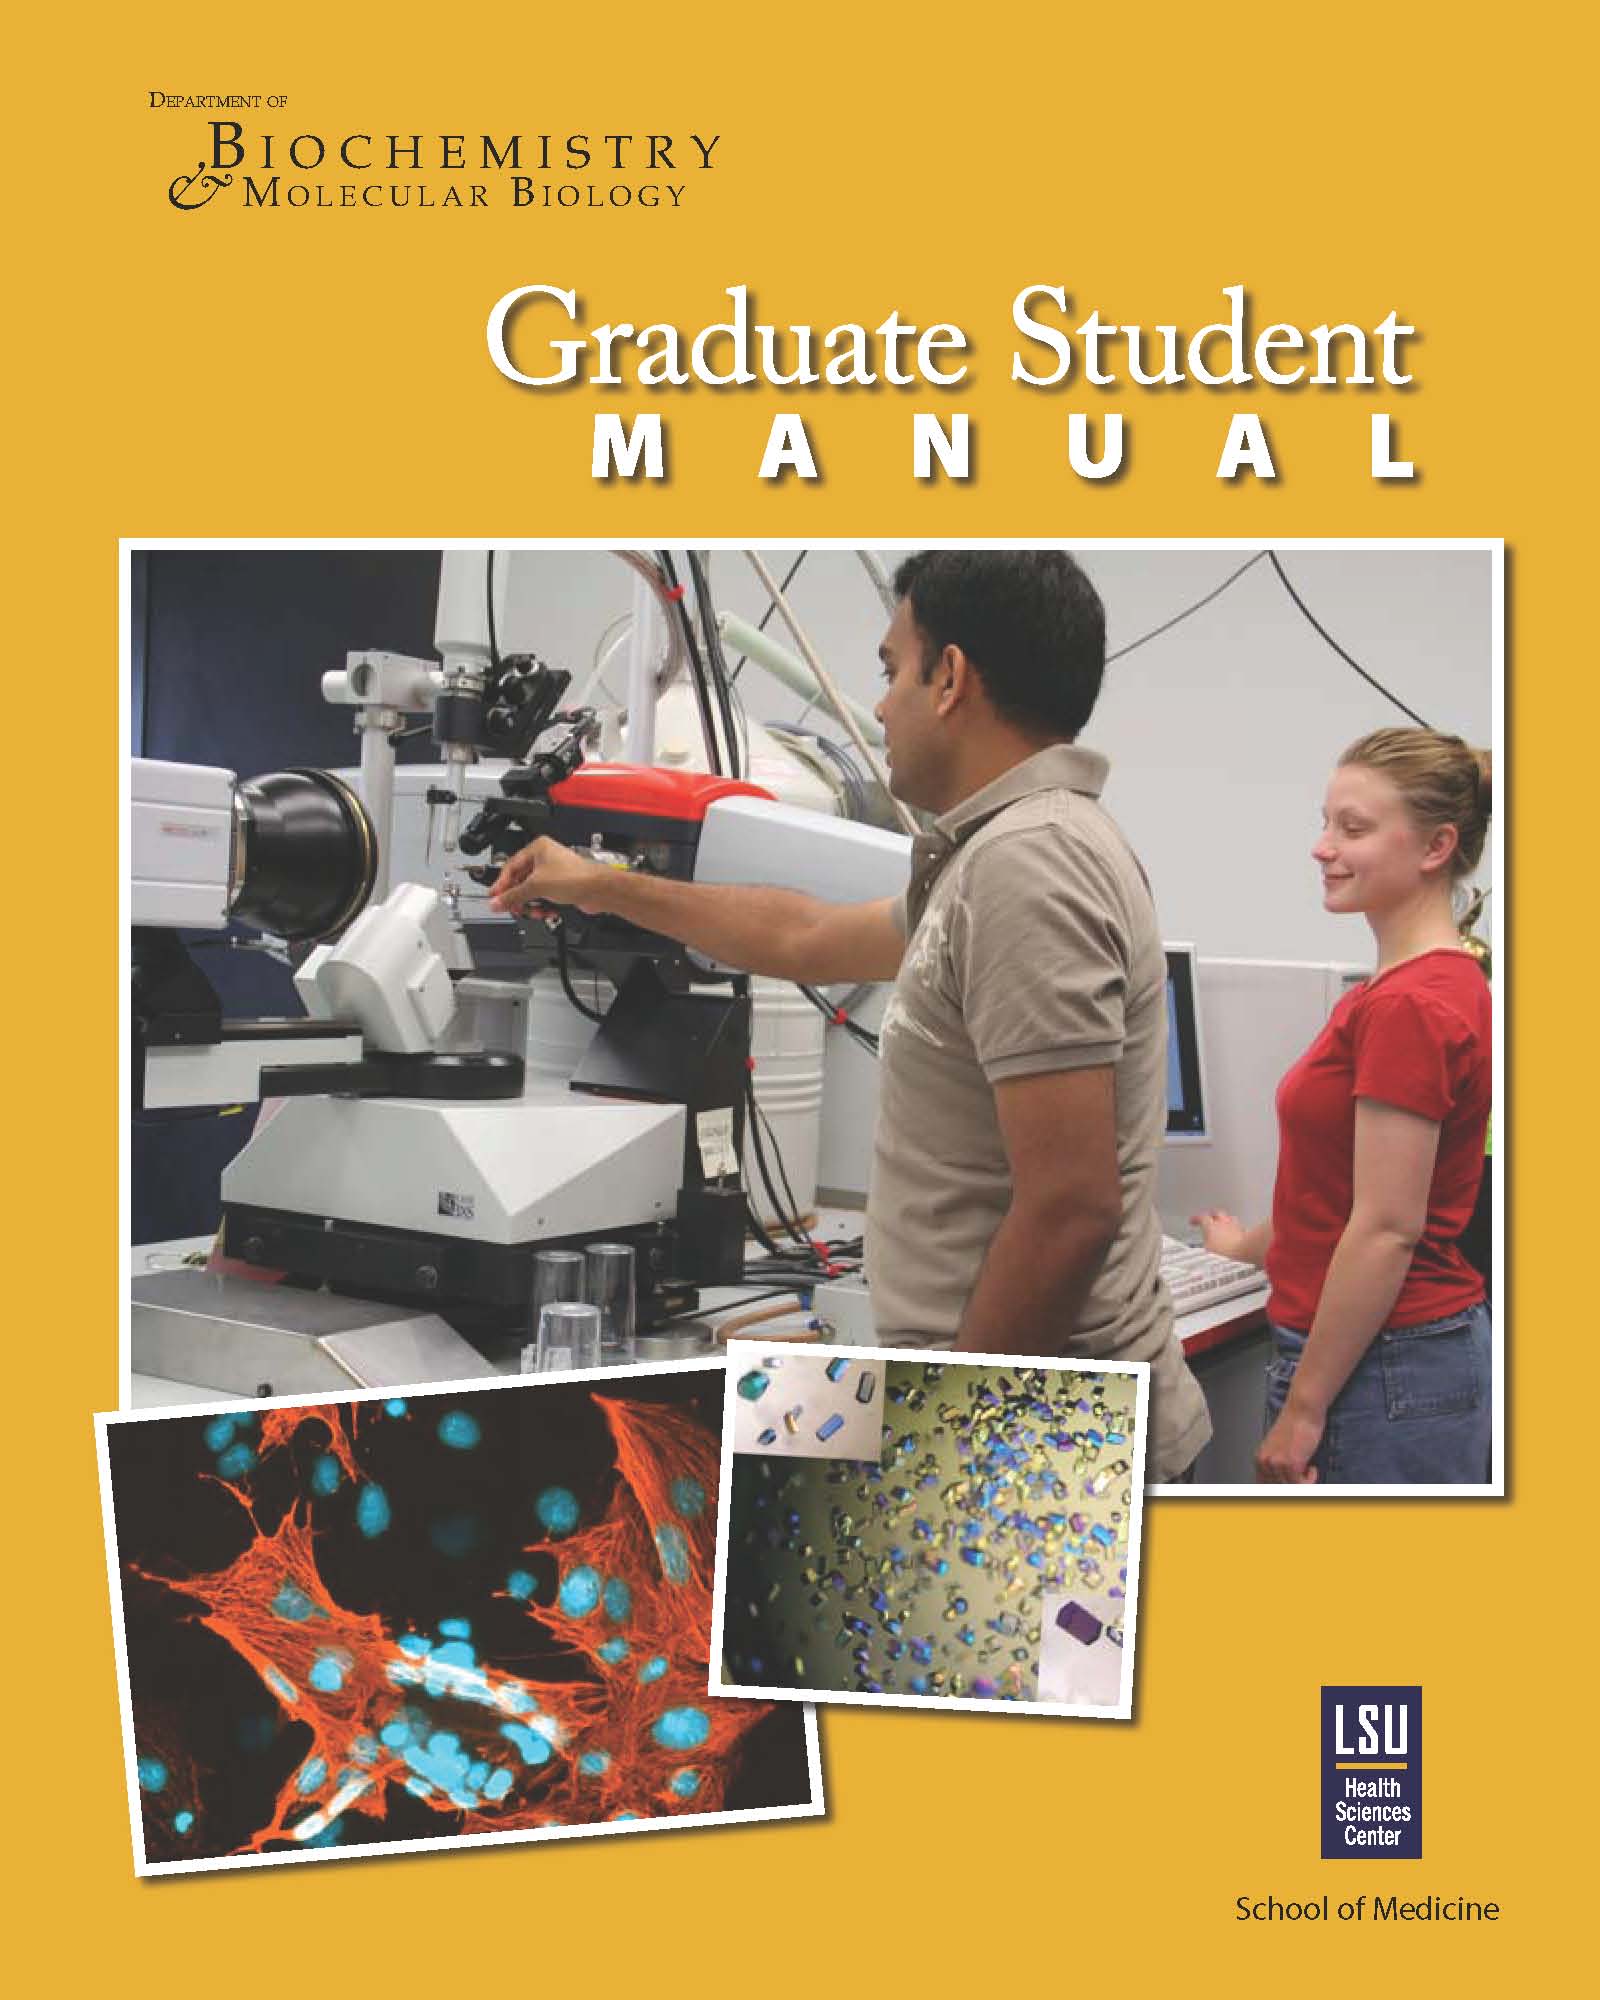 Graduate Studies Manual poster